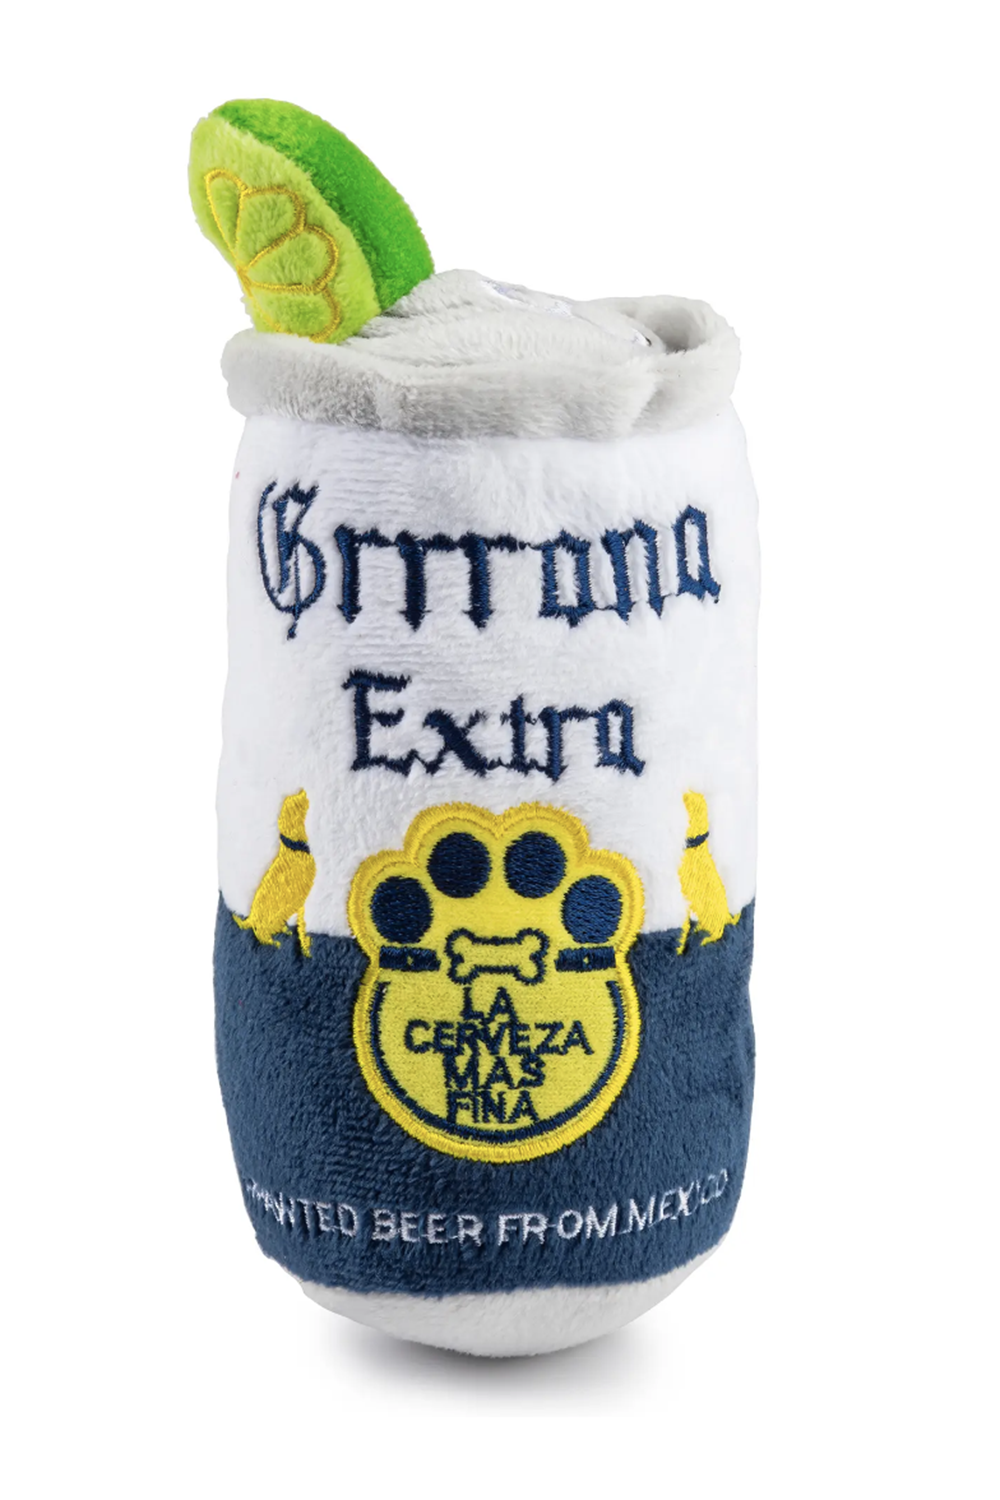 Funny Dog Toy - Grrrona Beer Corona Can